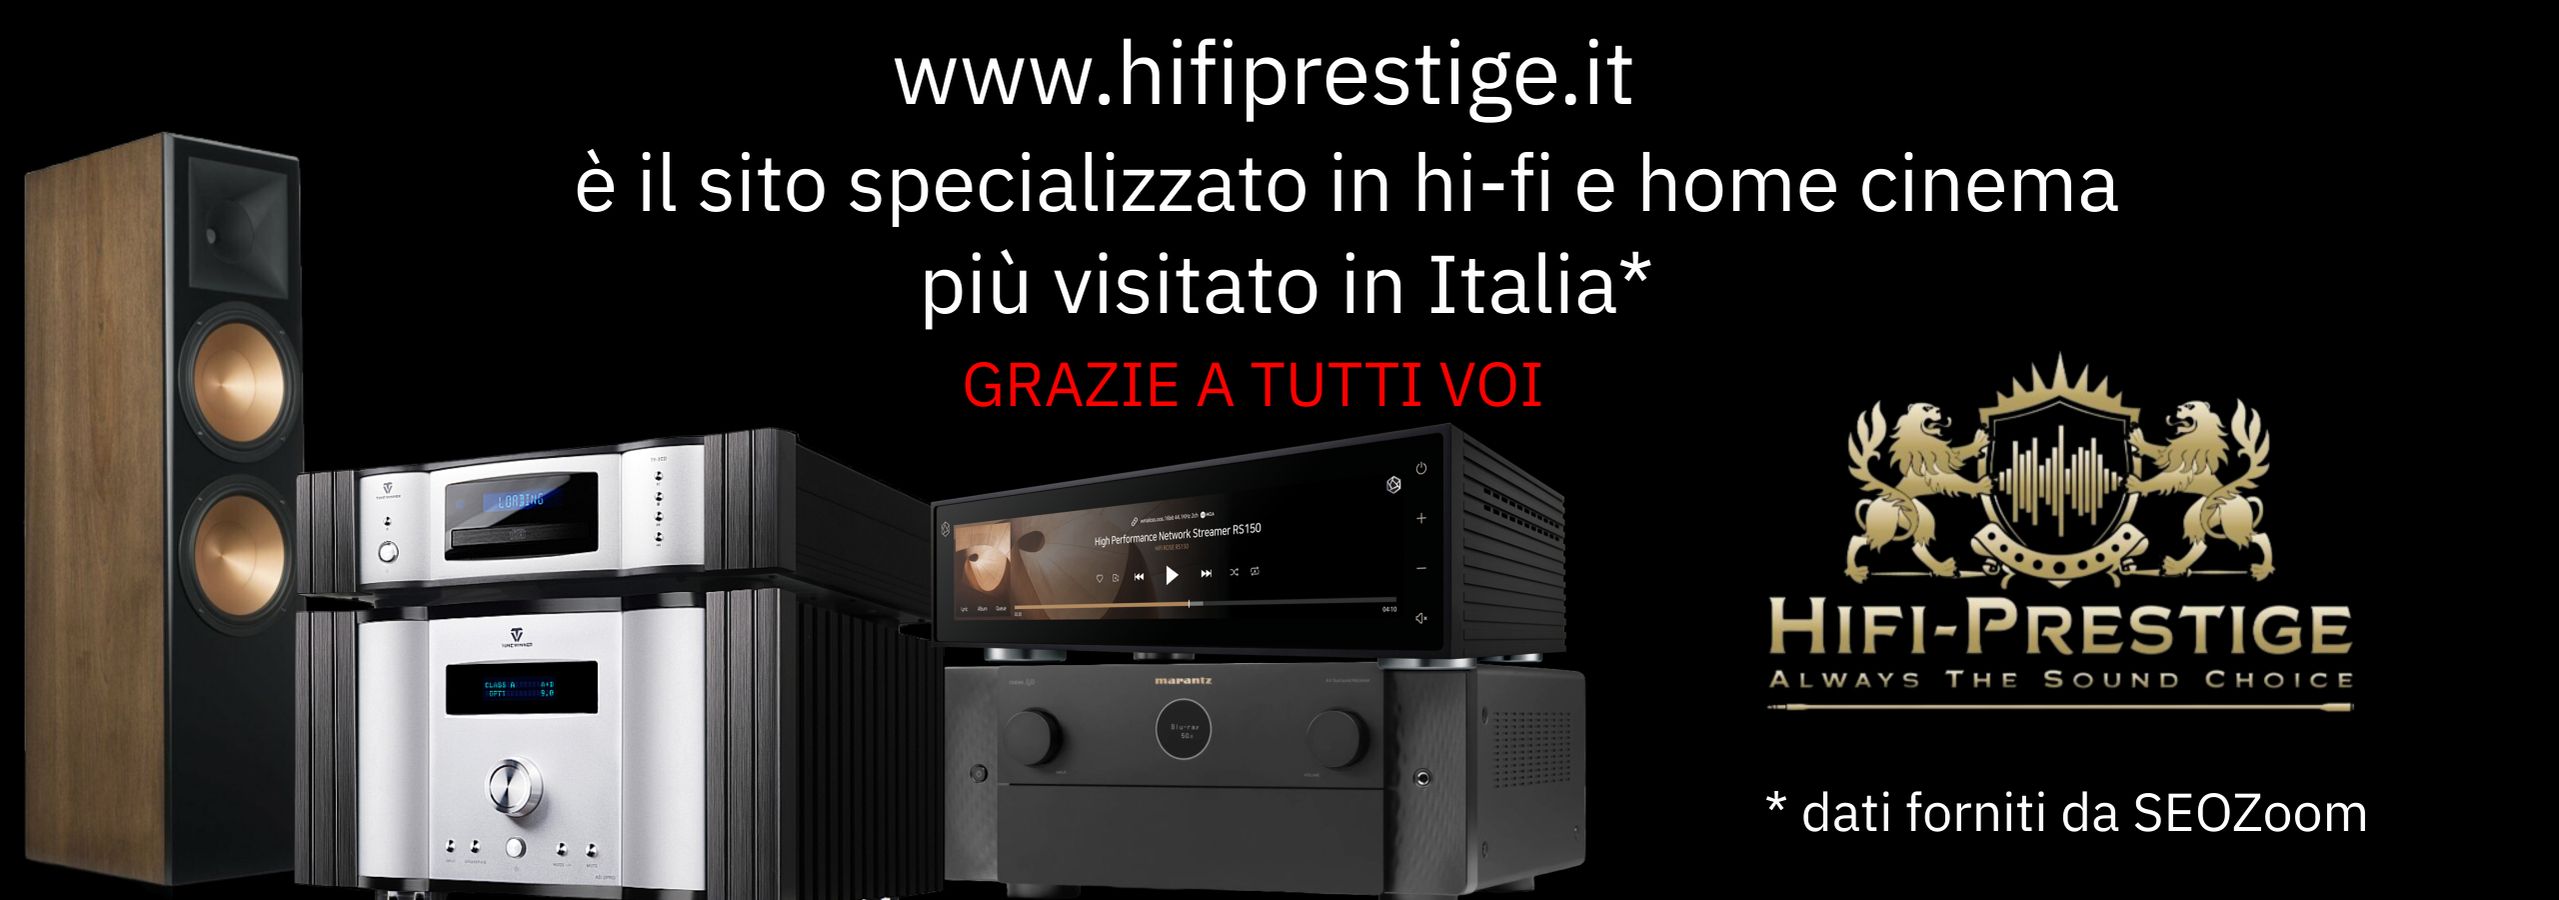 HiFi Prestige: impianti hi-fi e componenti audio